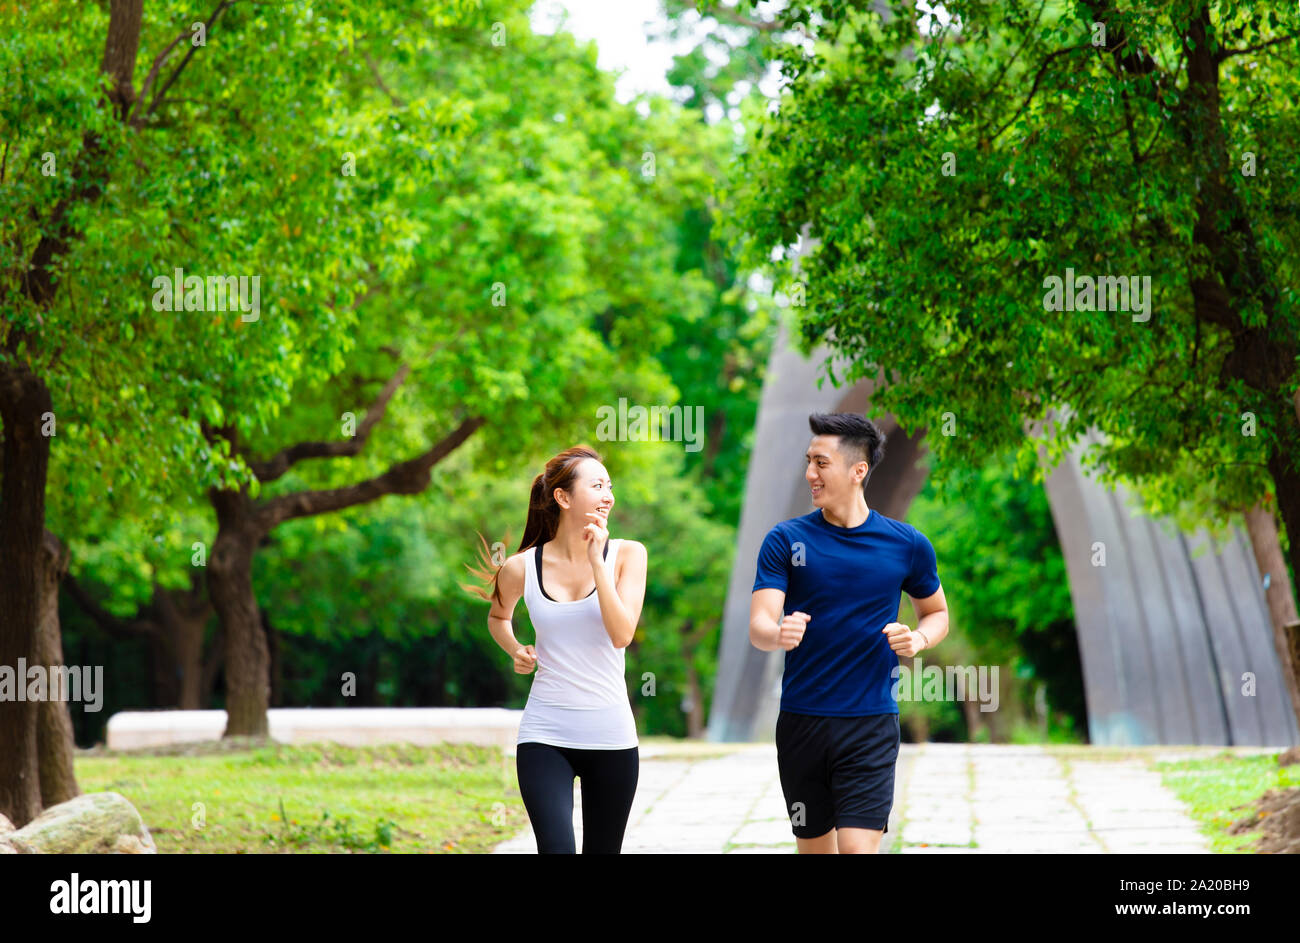 Heureux Couple jogging et d'exécution en nature Banque D'Images